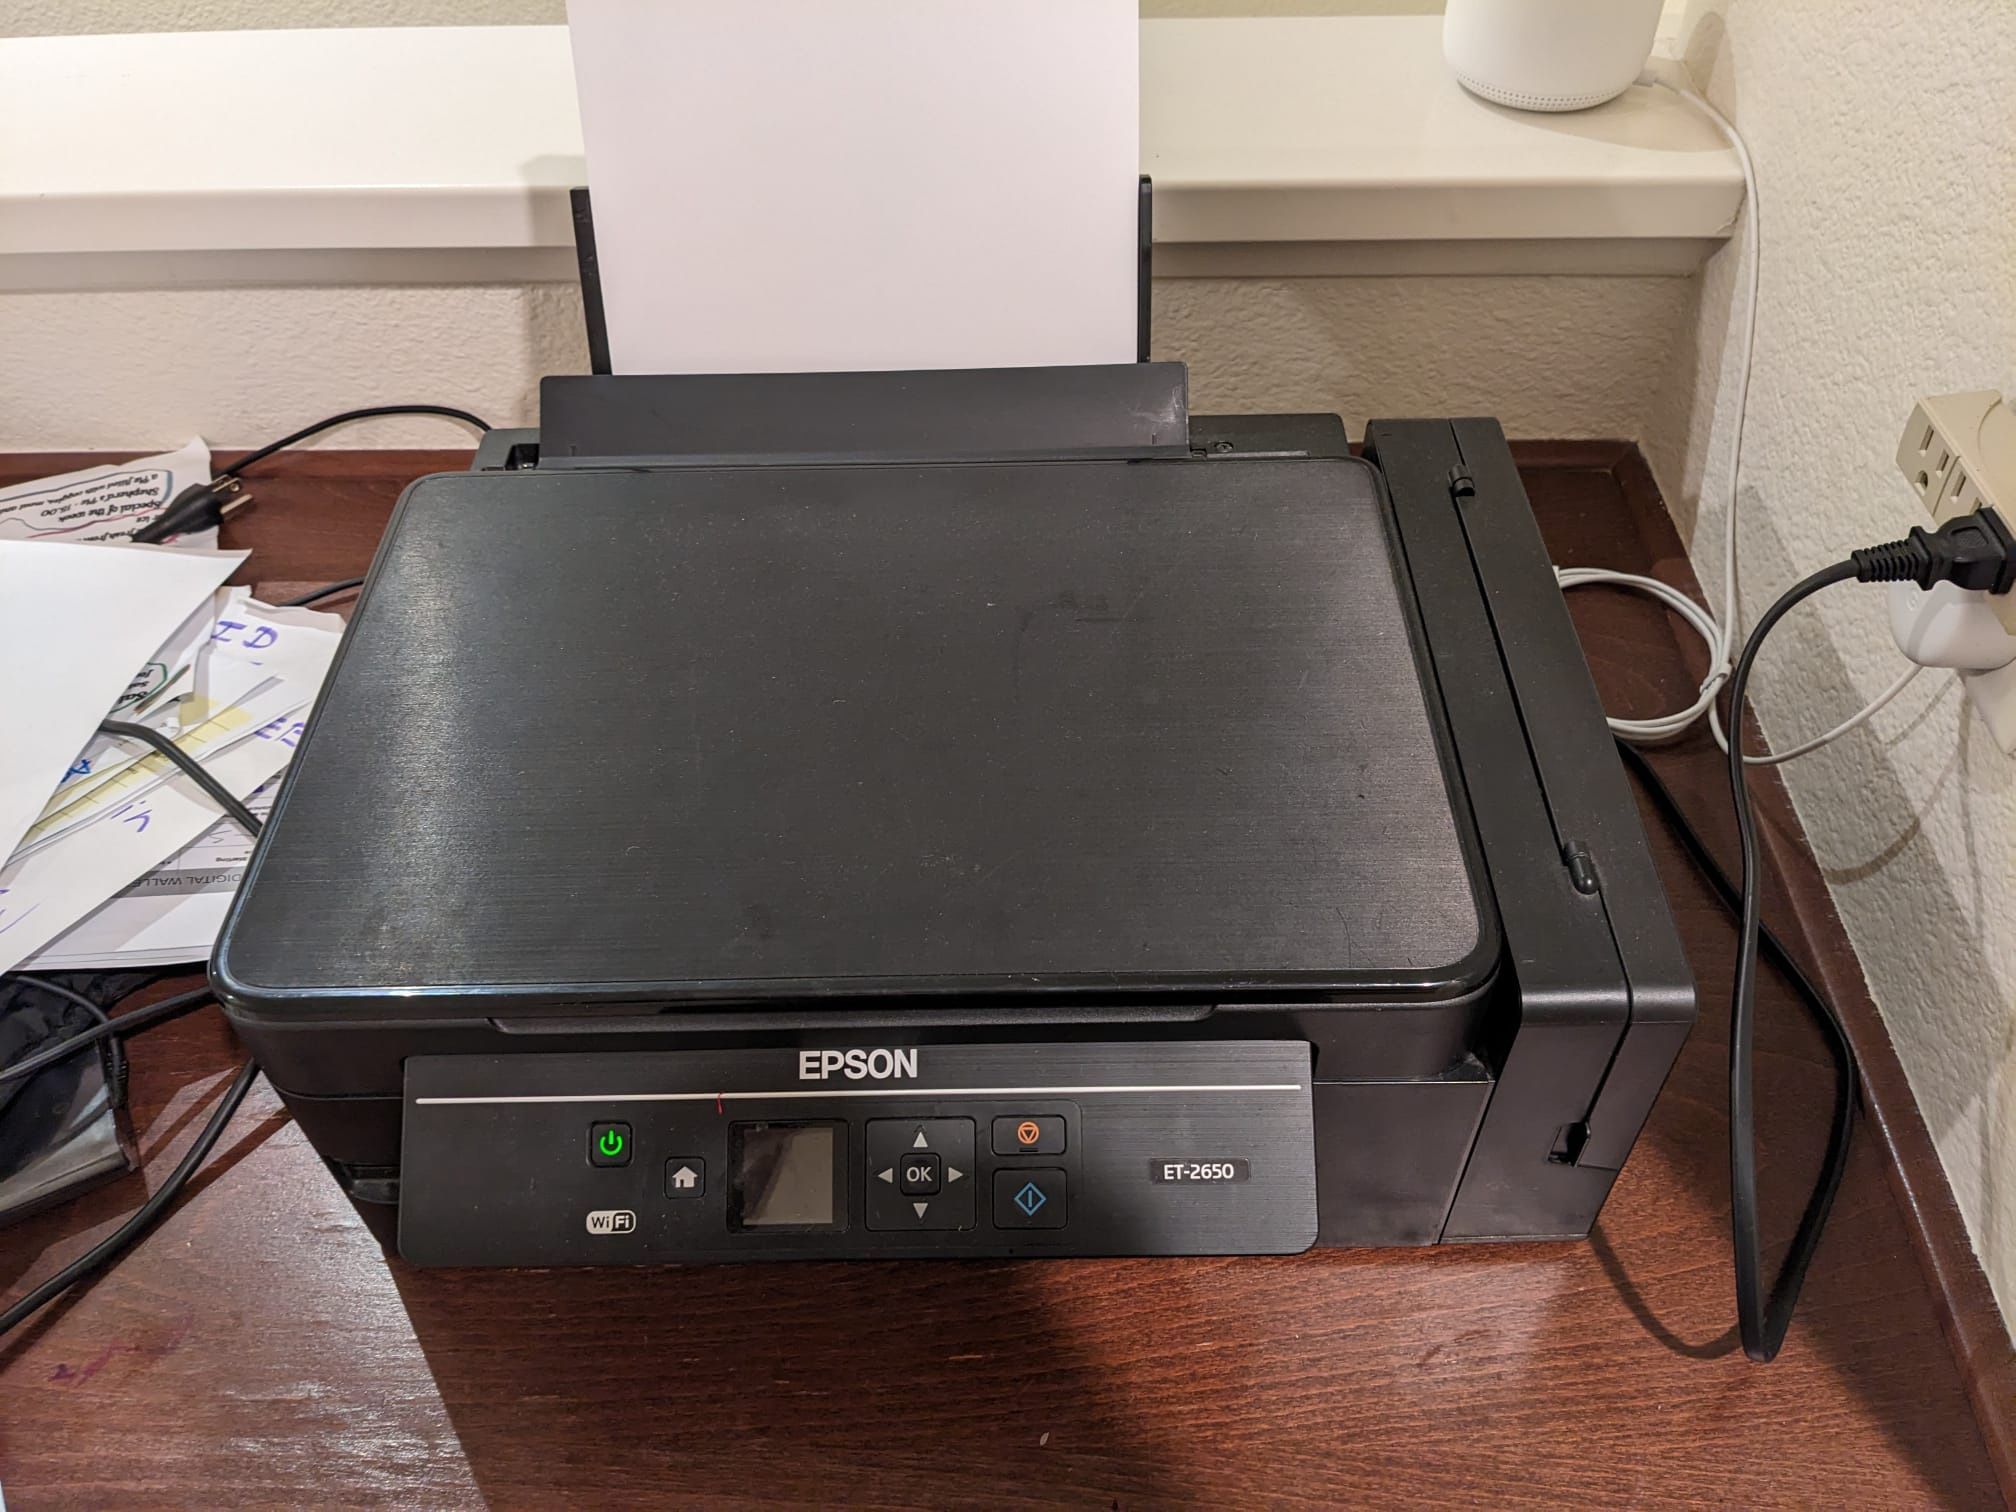 Inkjet Printer Epson 2650 for Sale in Rcho Santa Fe, - OfferUp